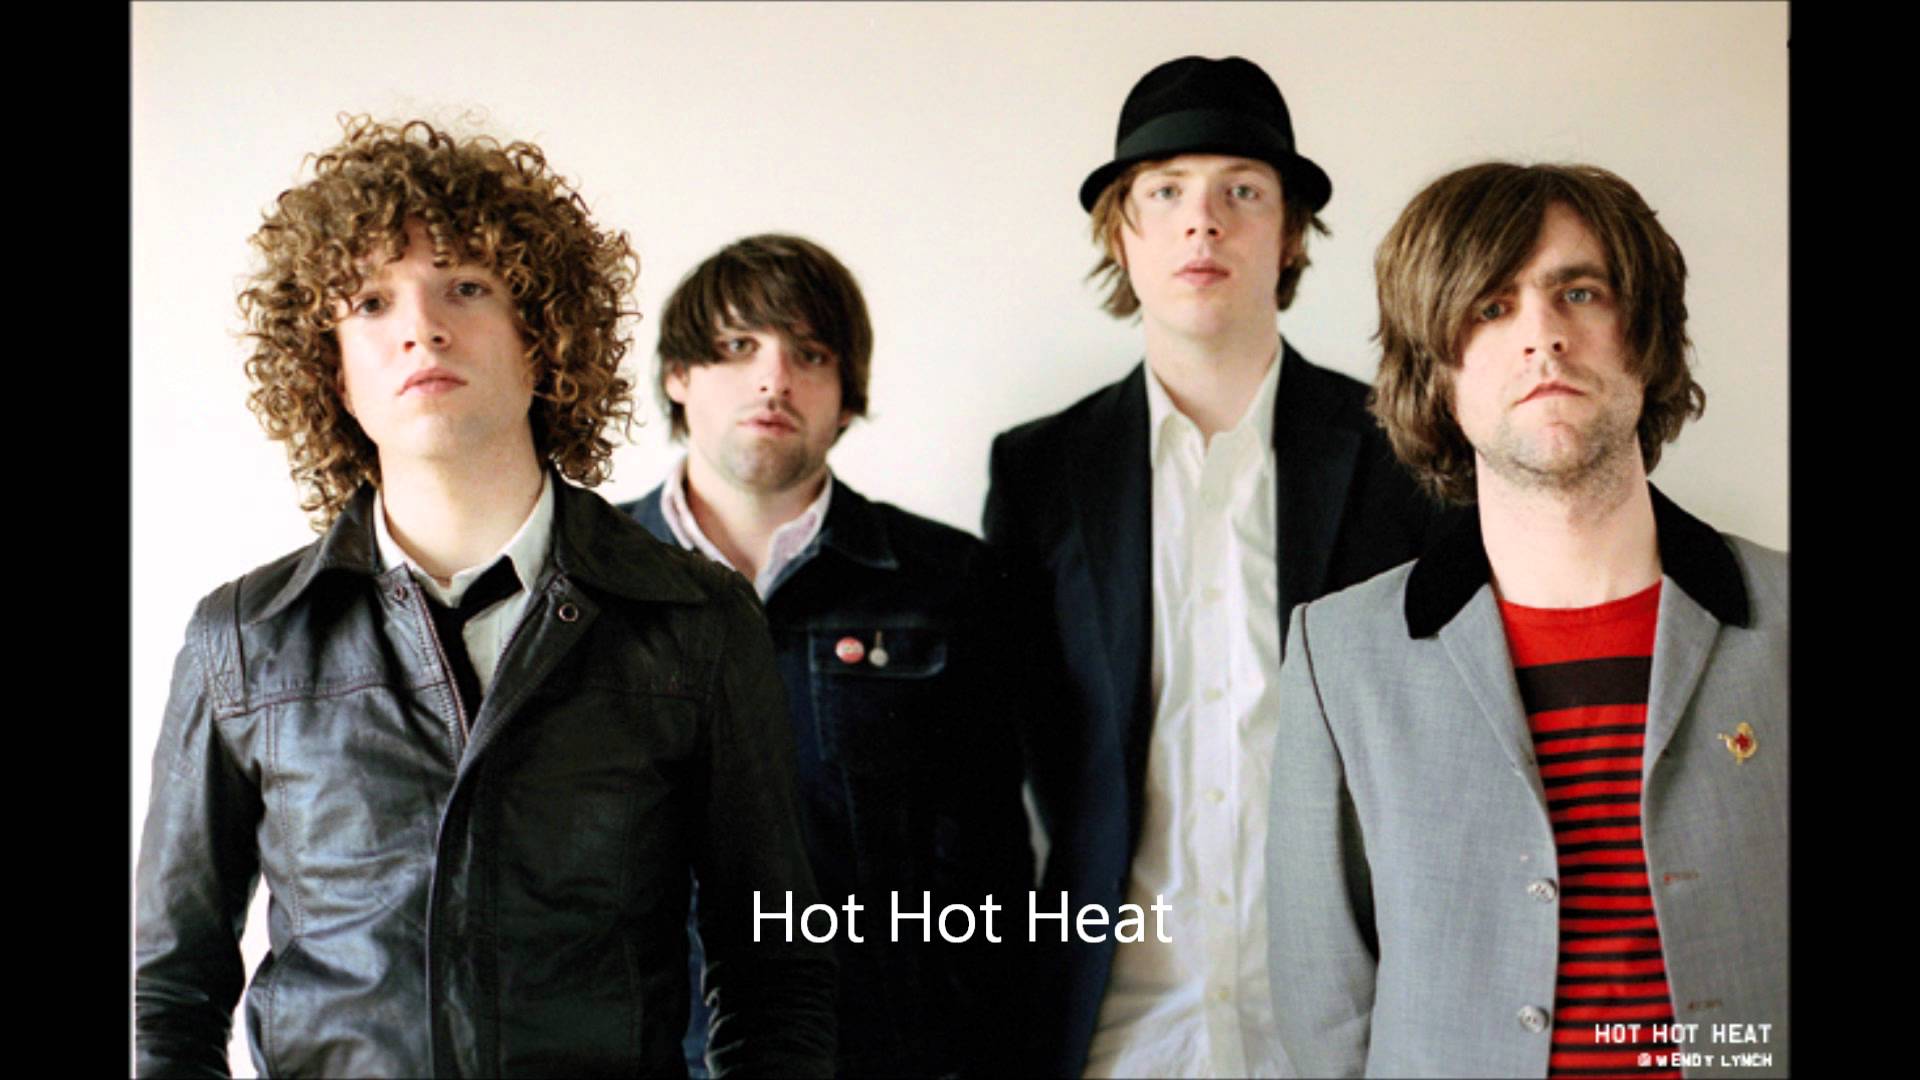 Hot Hot Heat HD wallpapers, Desktop wallpaper - most viewed